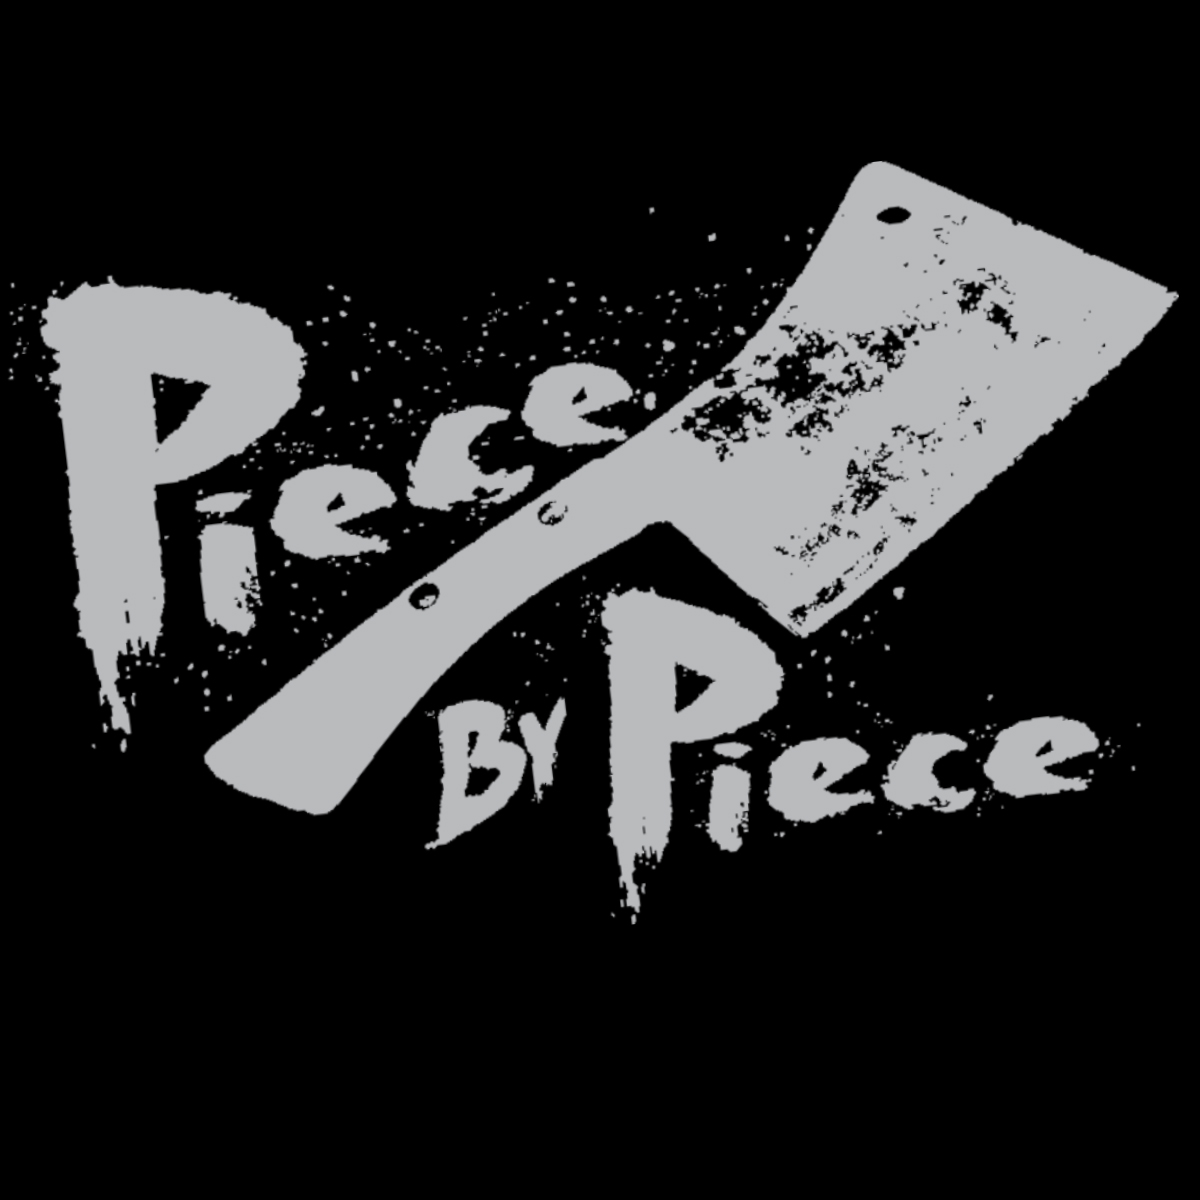 Piece by Piece